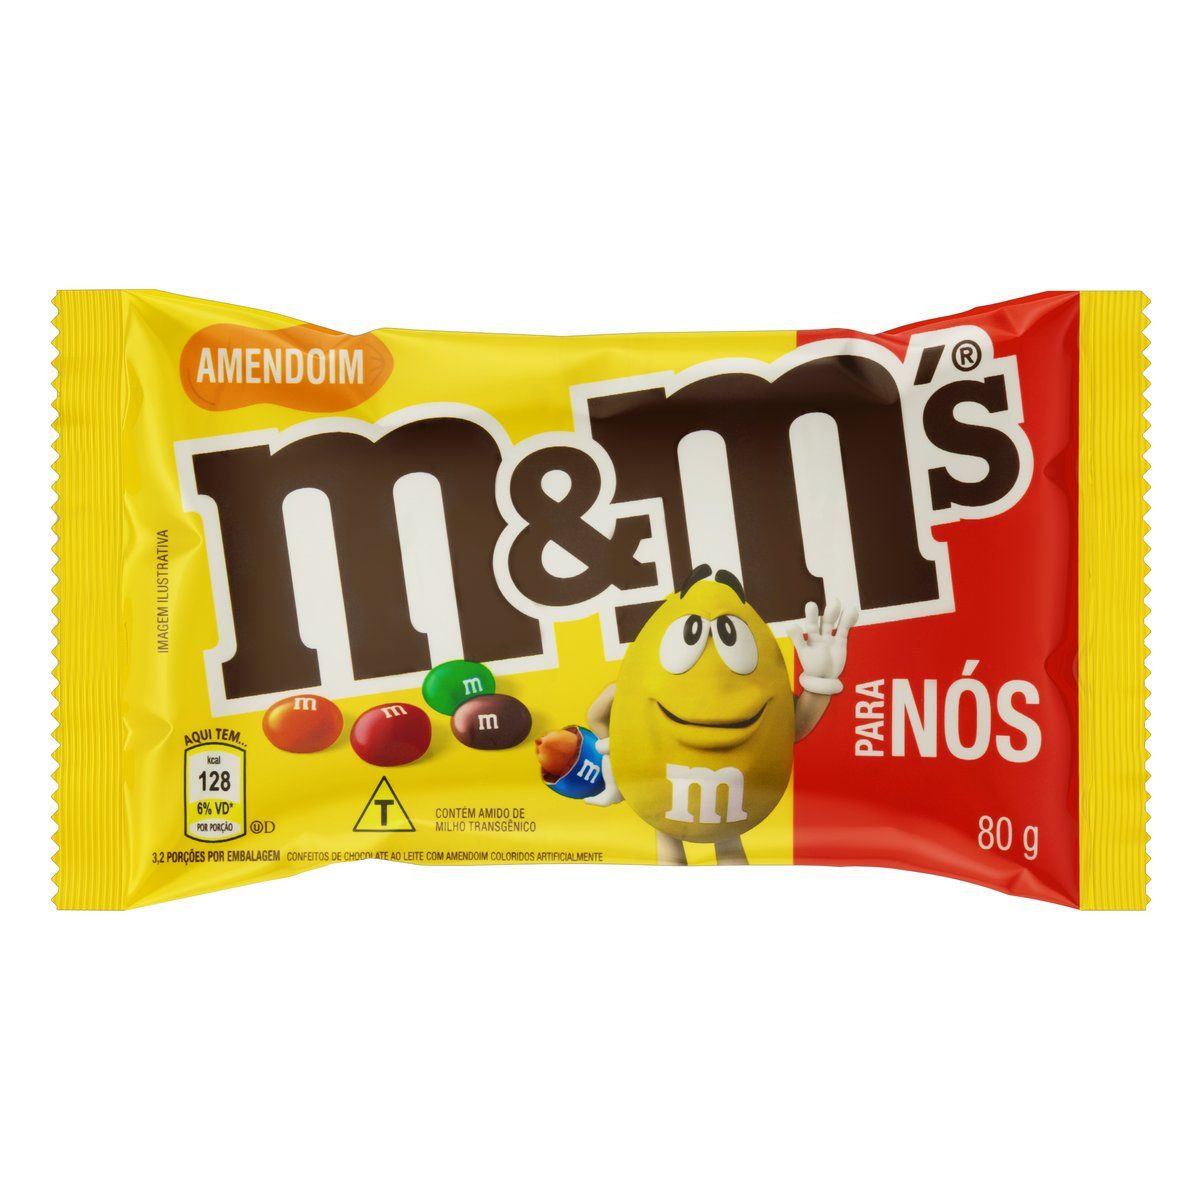 Confeito de Chocolate ao Leite com Amendoim M&M's para Nós Pacote 80g image number 0